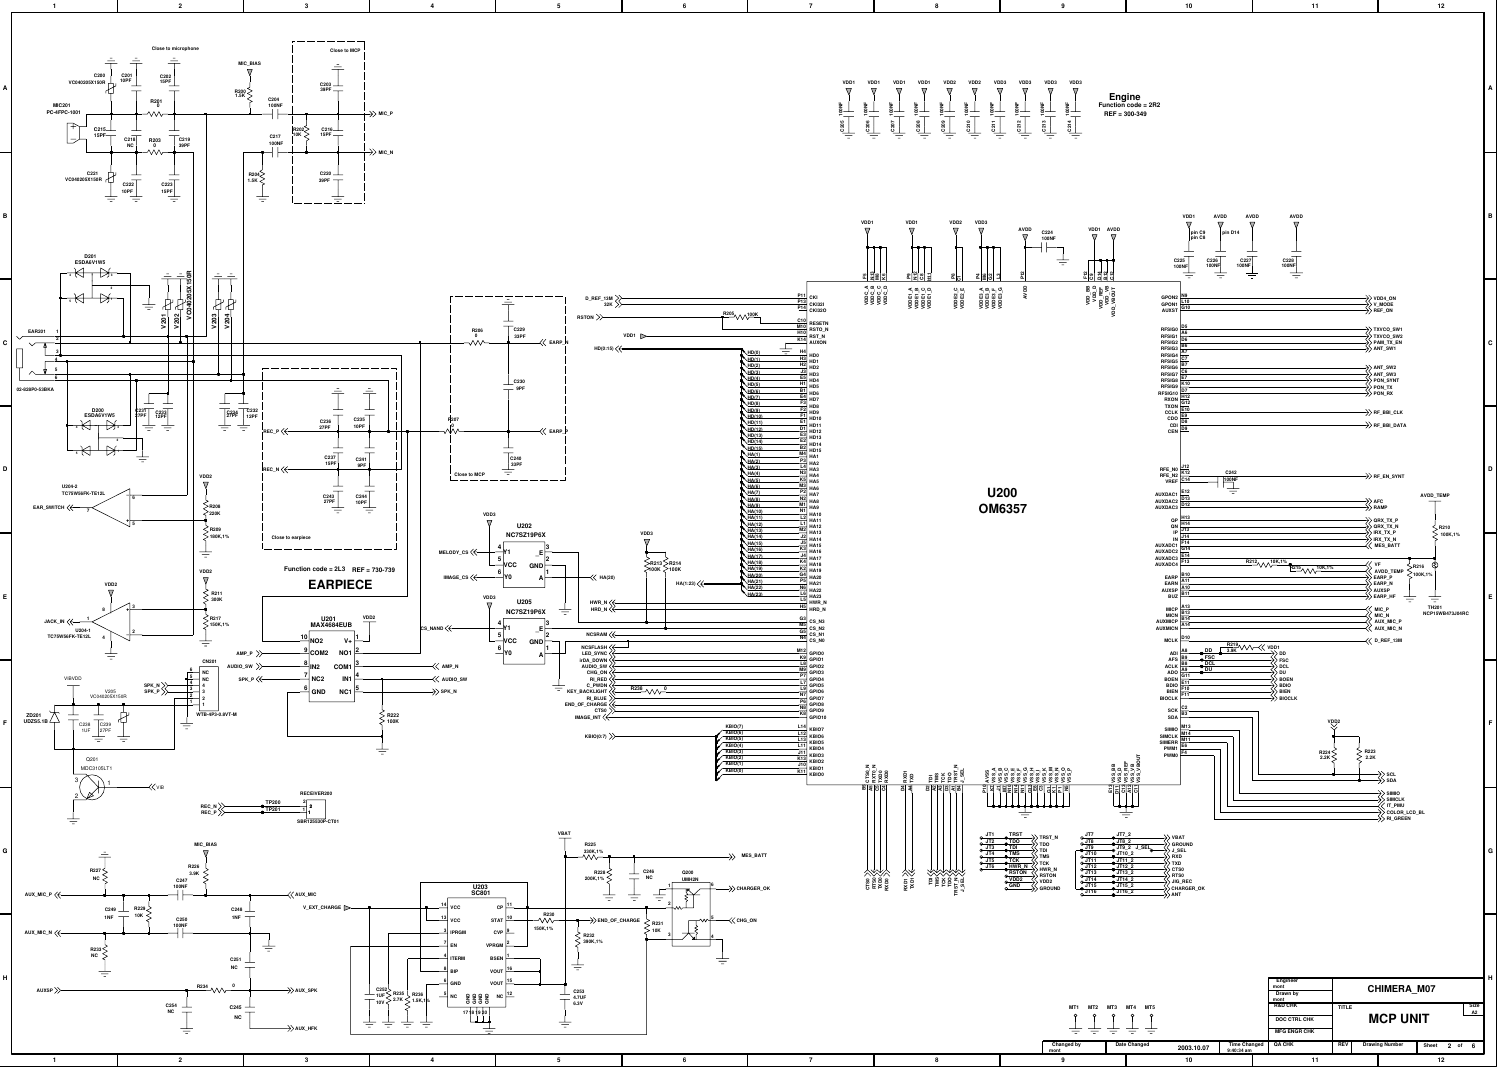 Page 4 of 9 - Samsung SGH-X600 - Schematics. Www.s-manuals.com. Schematics